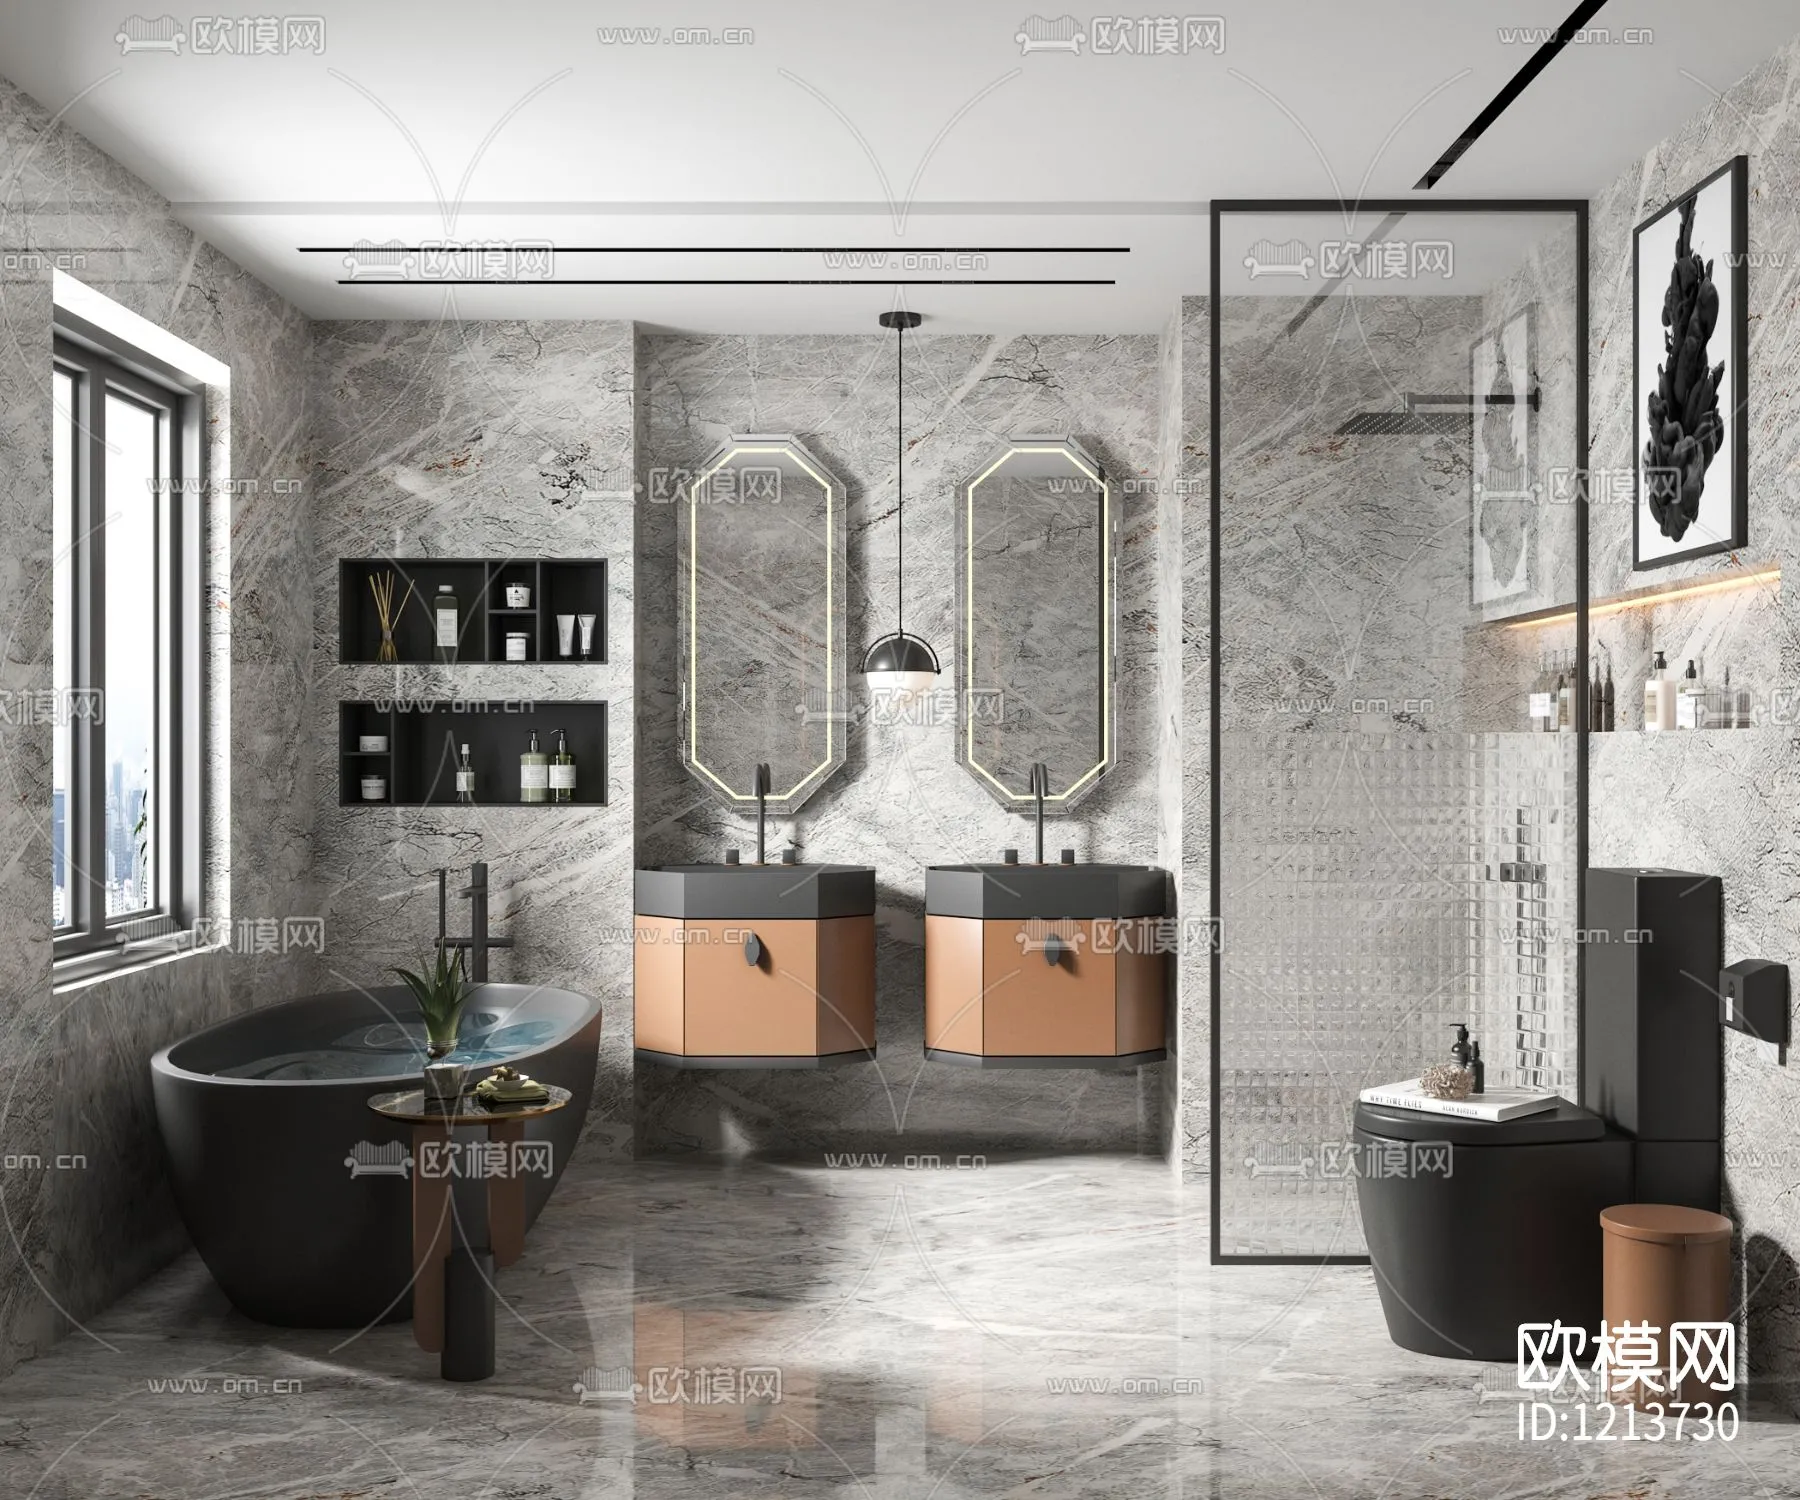 Bathroom 3D Scenes – 0106